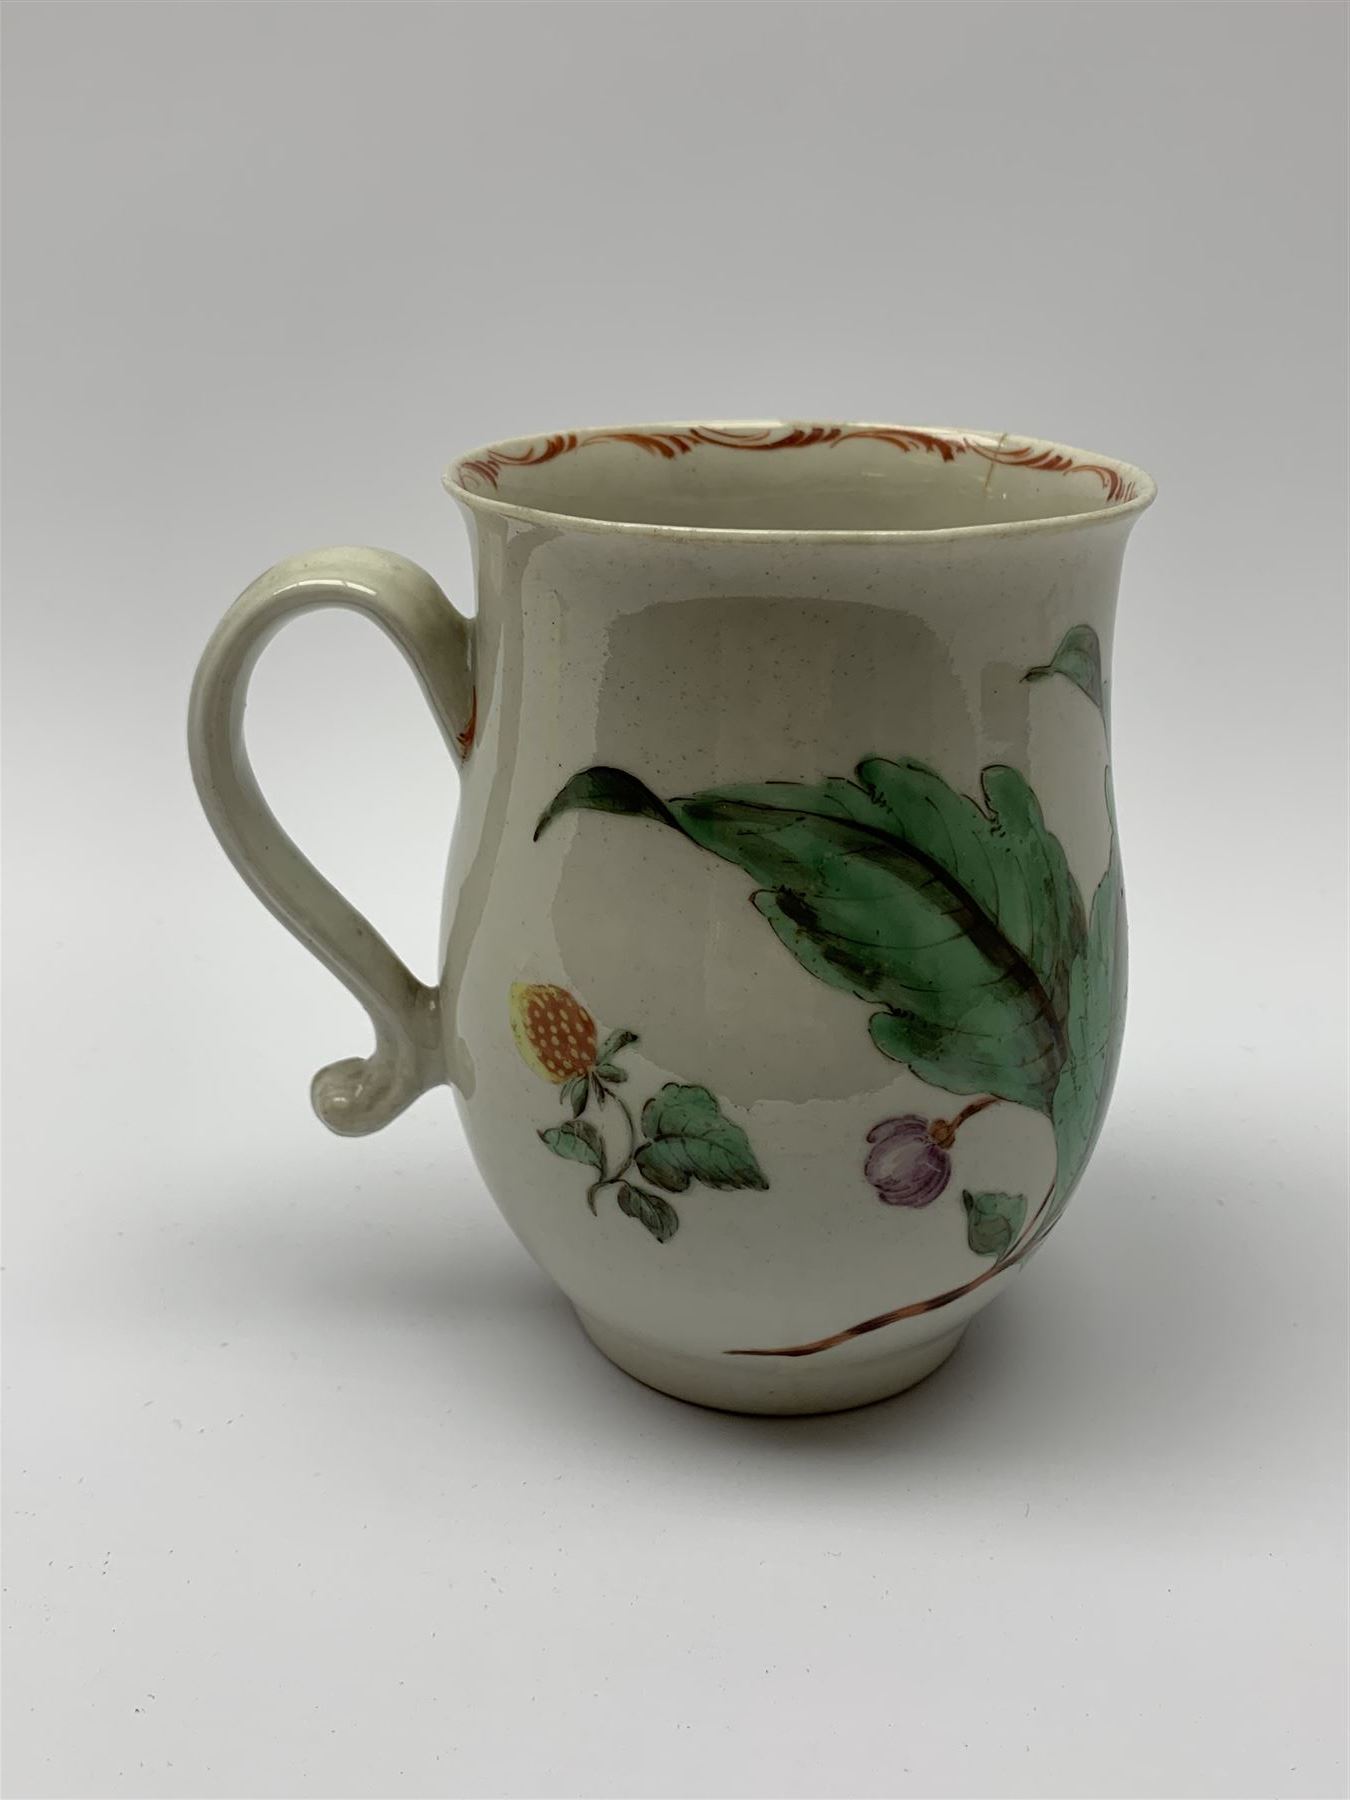 18th century porcelain mug - Image 2 of 8